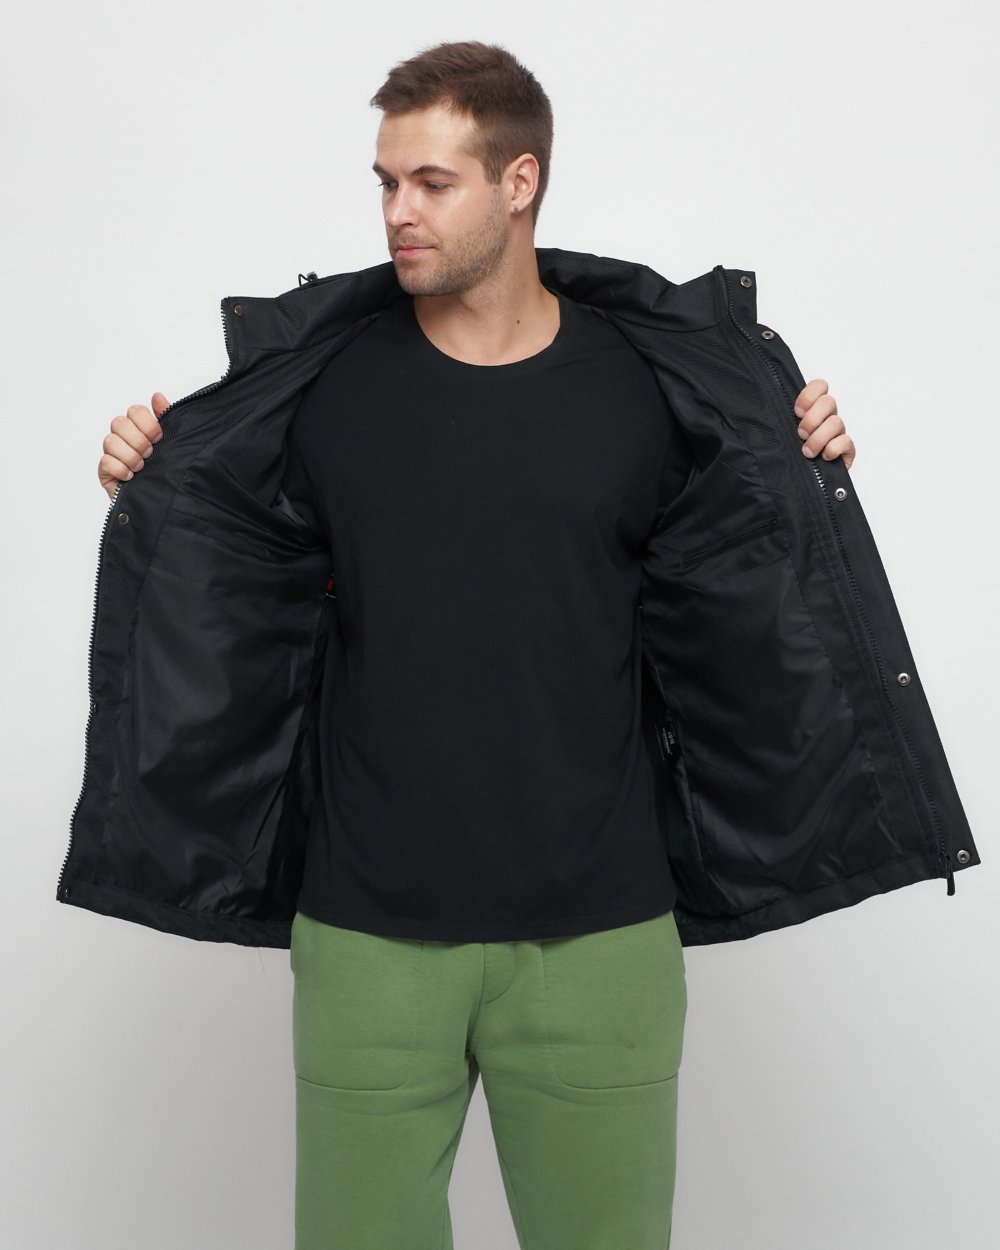 Купить куртку мужскую спортивную весеннюю оптом от производителя недорого в Москве 6652Ch 1